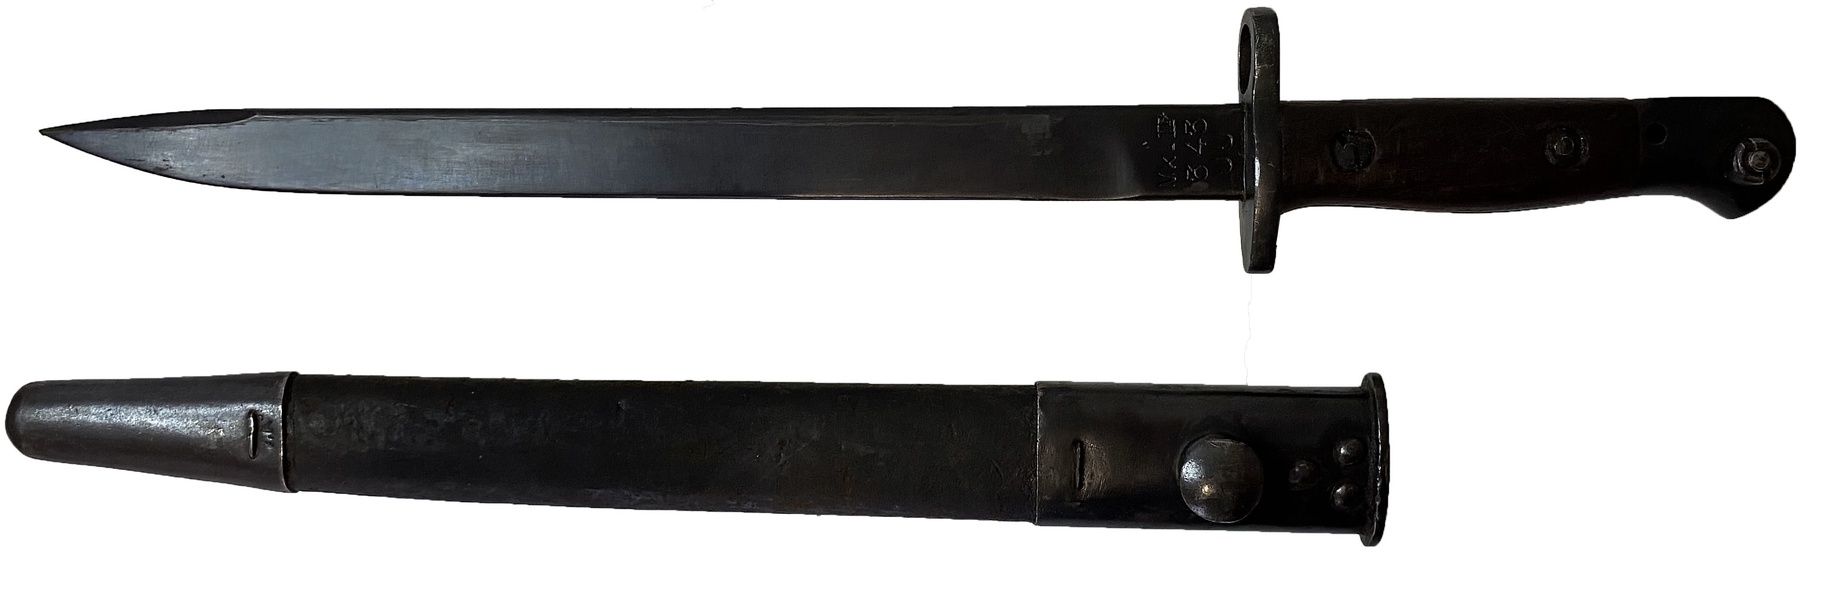 Штык - нож к винтовке Ли Энфилд образца 1907/1913 гг